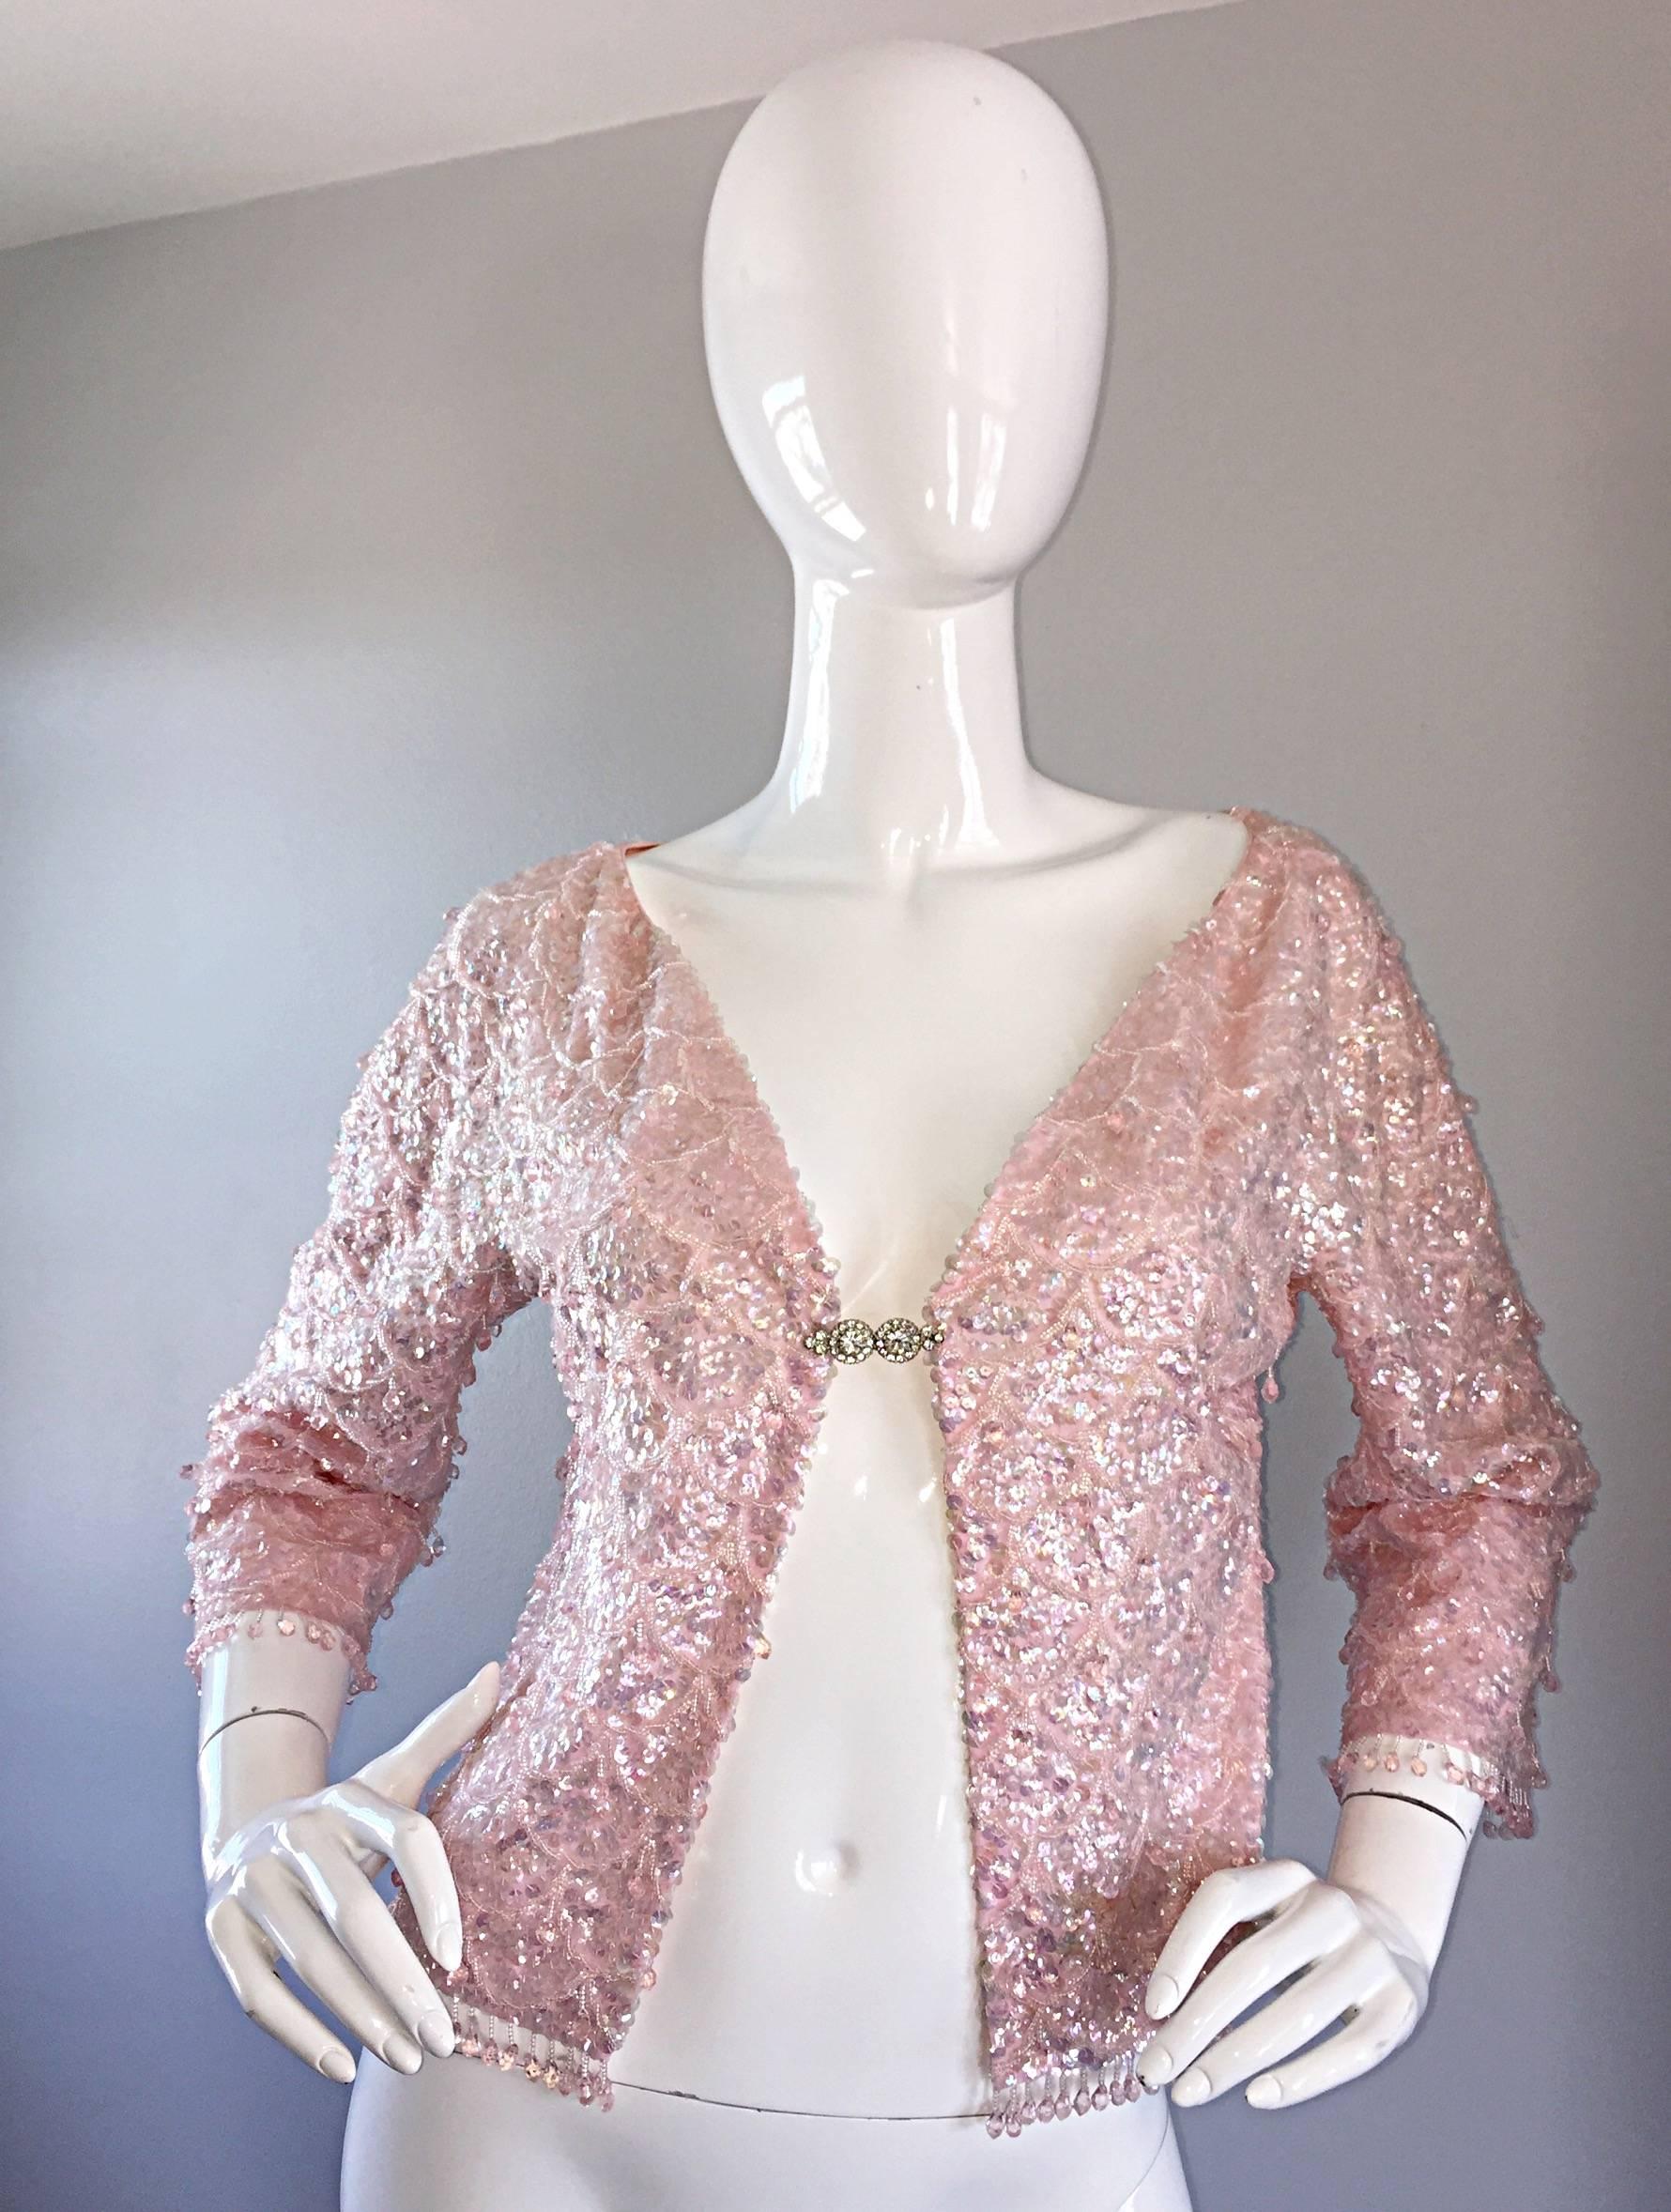 Joli cardigan vintage des années 50 en soie rose pâle pailletée et perlée. Les paillettes et les perles sont cousues à la main sur toute la surface. Perles roses pendantes tout au long du vêtement, à l'ourlet et au bord des manches. Fermeture en